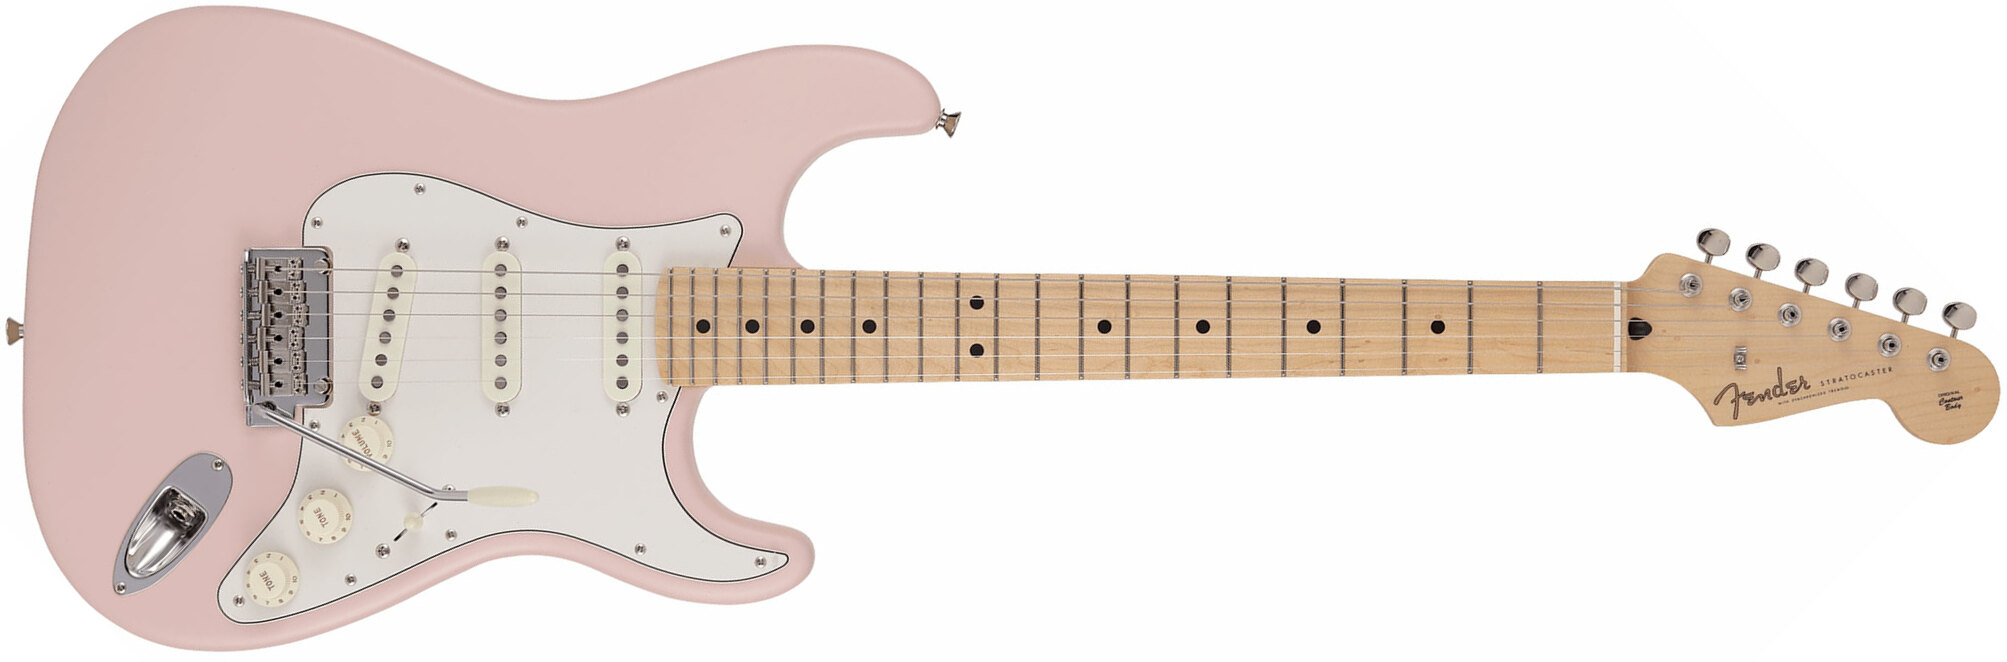 Fender Strat Junior Mij Jap 3s Trem Rw - Satin Shell Pink - Elektrische gitaar voor kinderen - Main picture